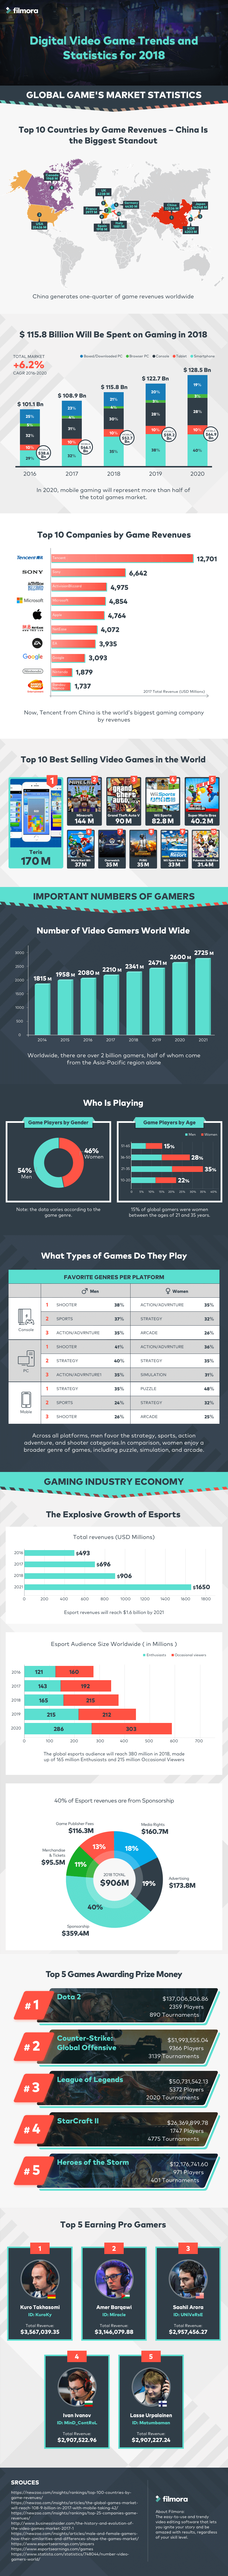 tendances et statistiques des jeux vidéo